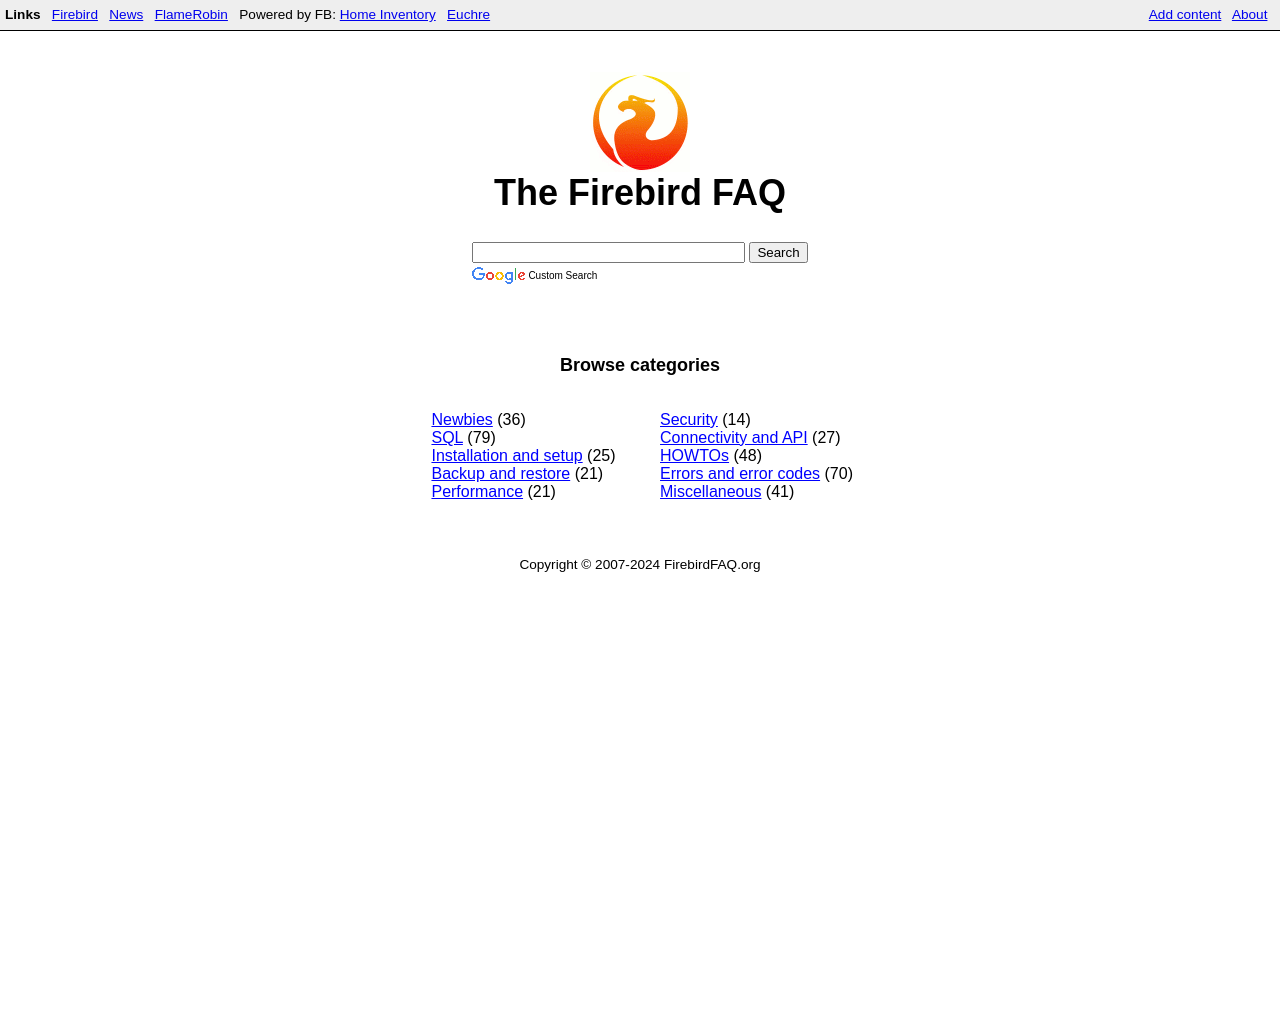 firebirdfaq.org